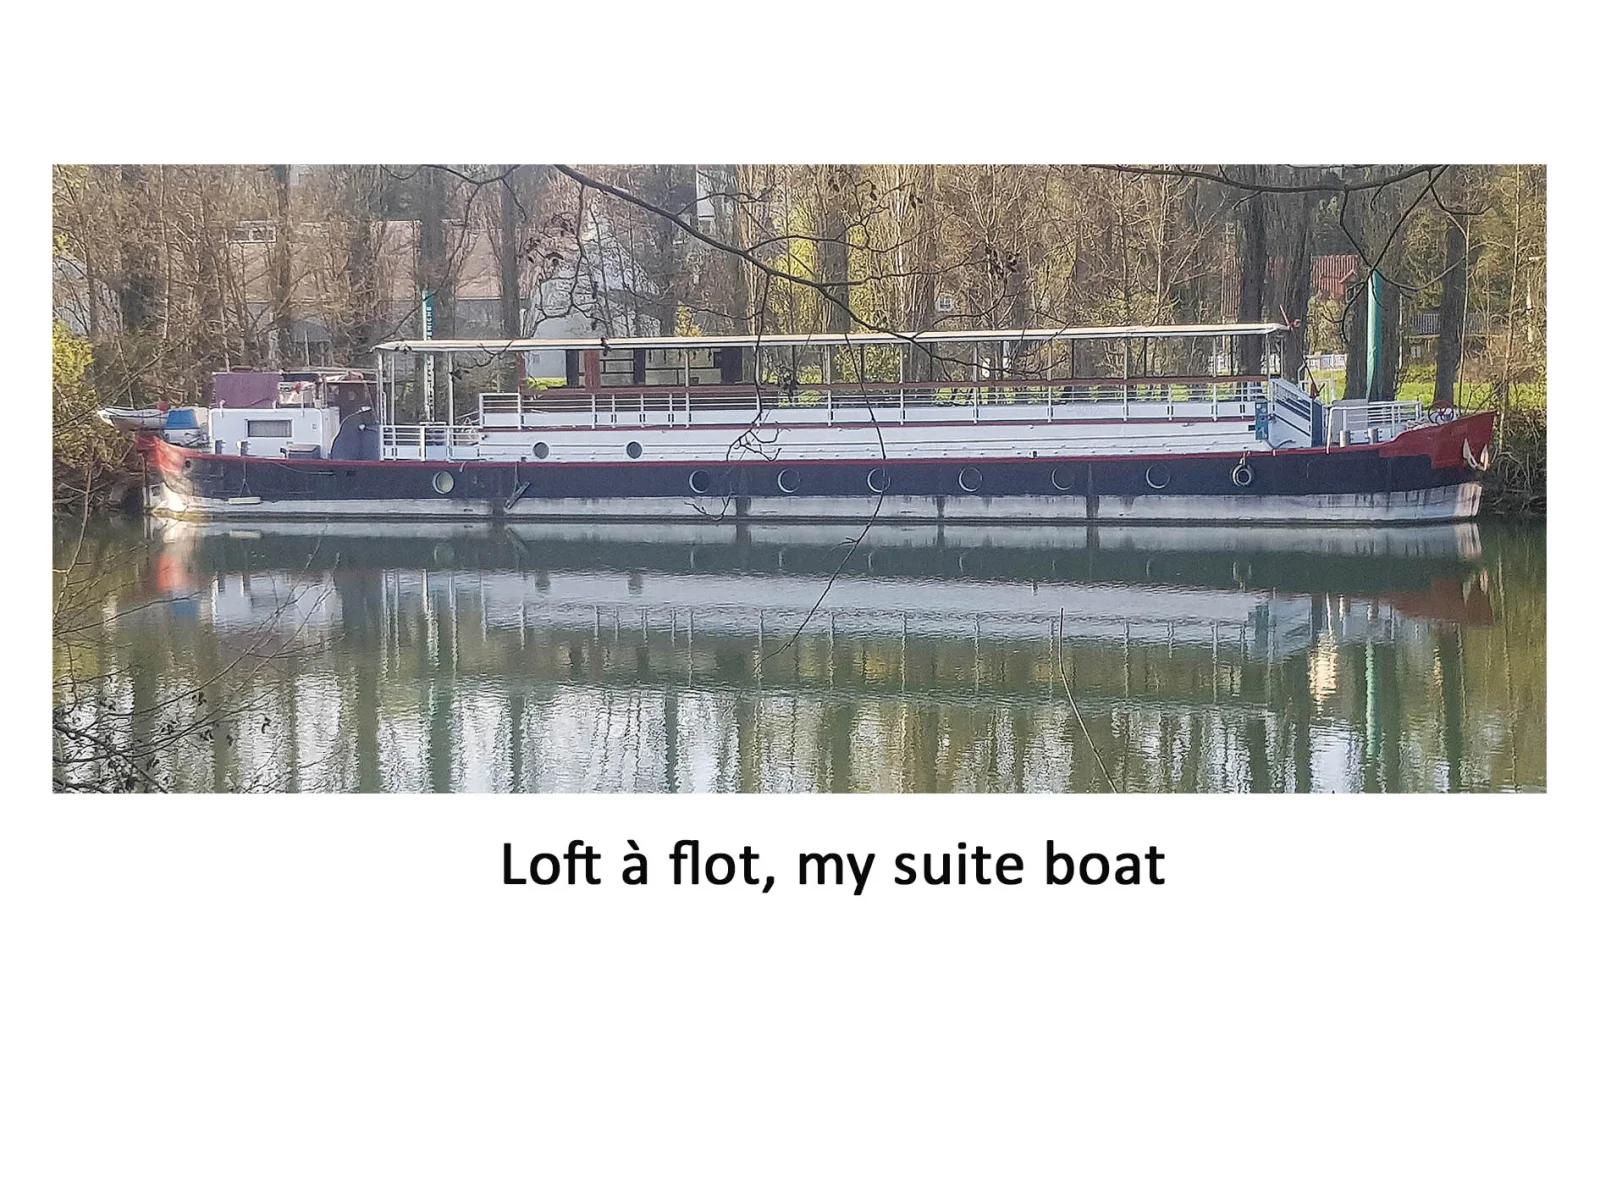 Cuisine dans Peniche : Loft a flot, my suite boat - 1